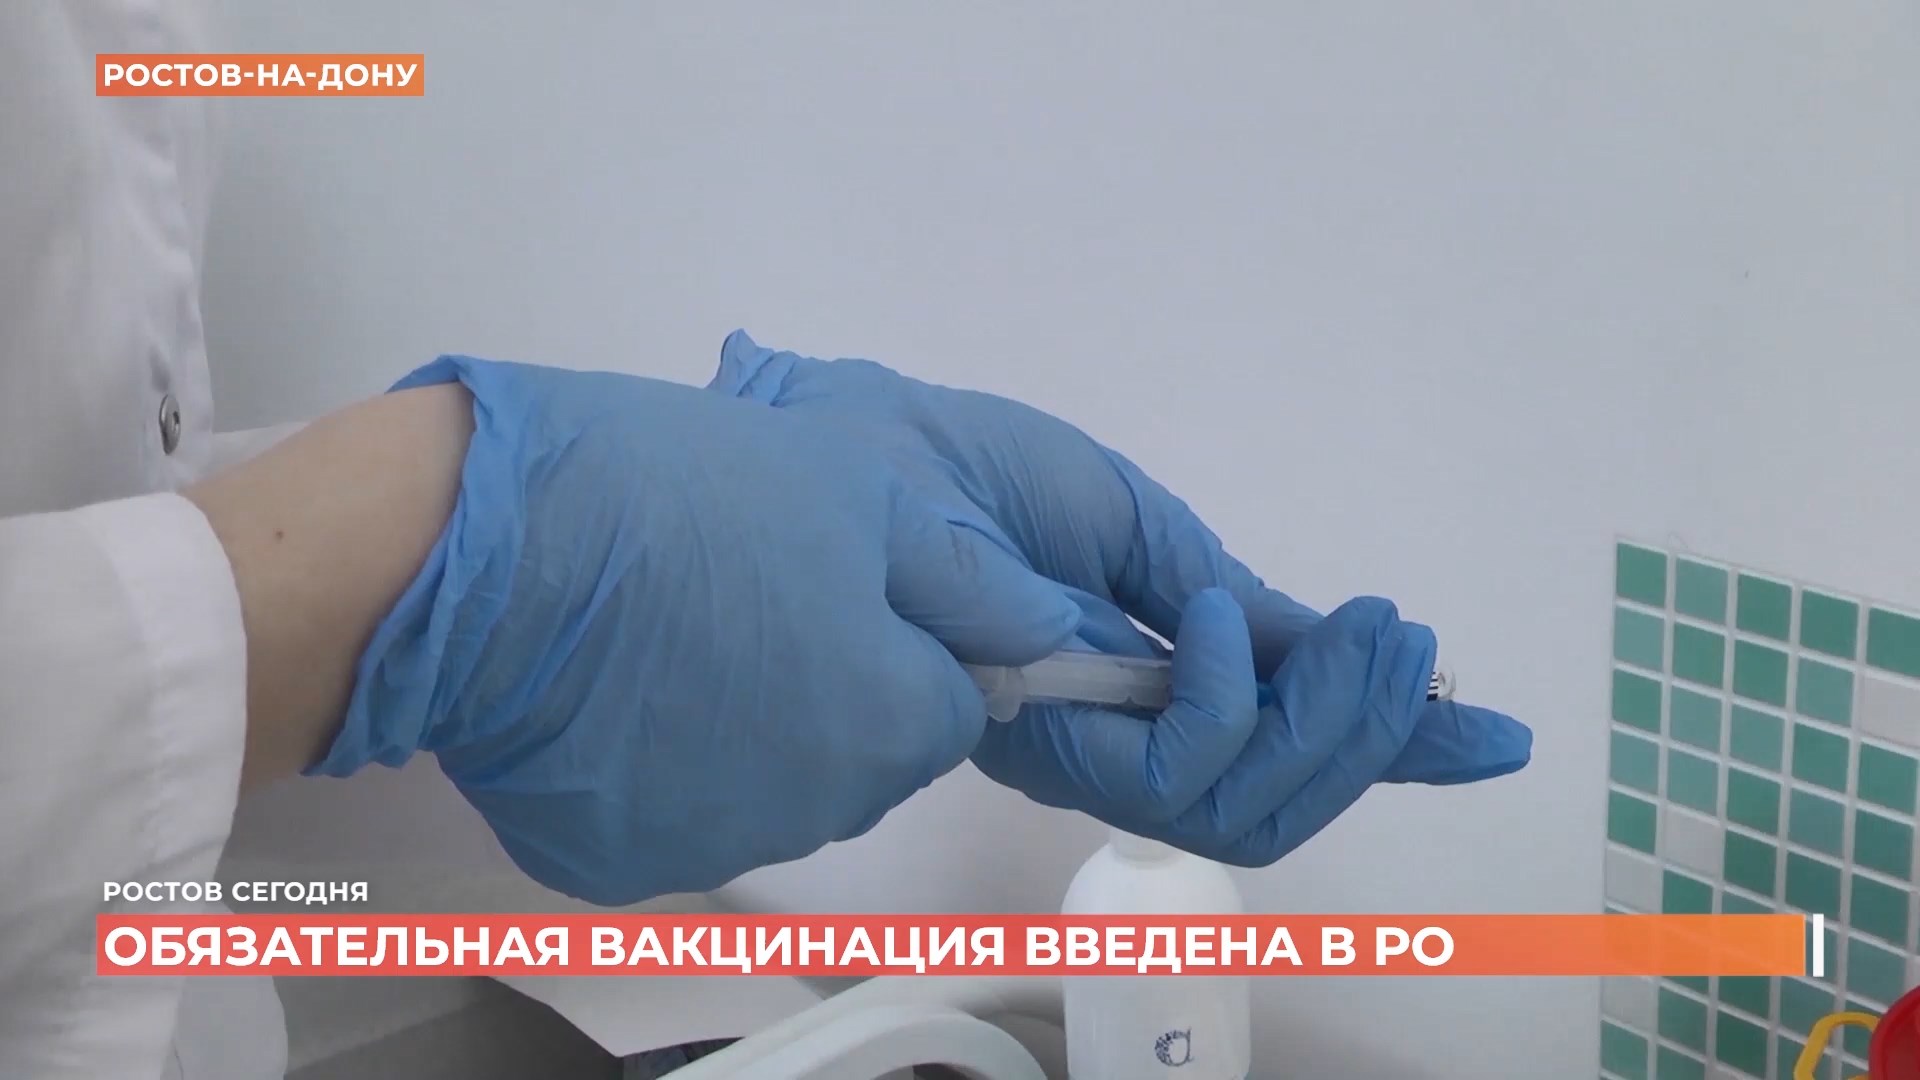 Обязательная вакцинация введена в Ростовской области